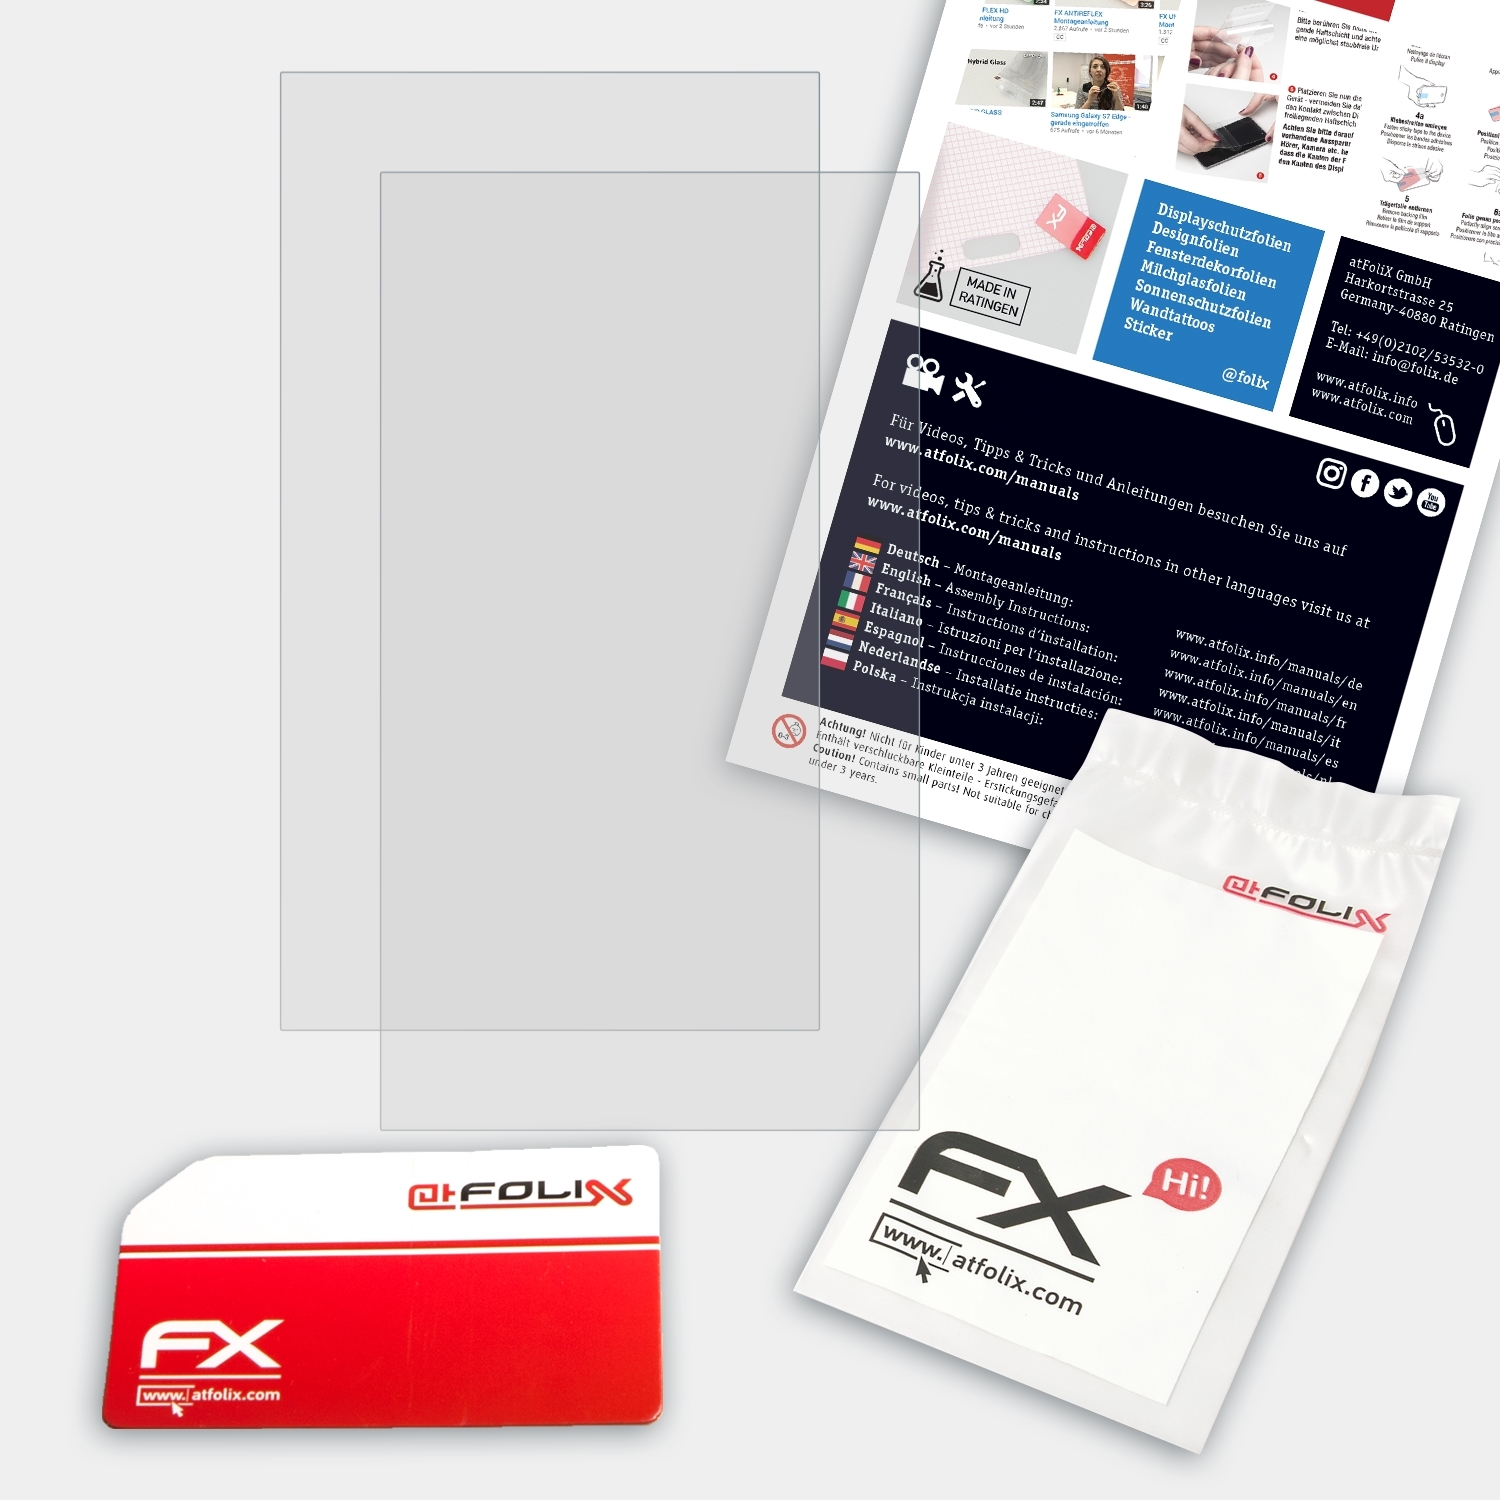 ATFOLIX 2x FX-Antireflex Displayschutz(für Google (Samsung)) Chromebook inch) (11.6 3